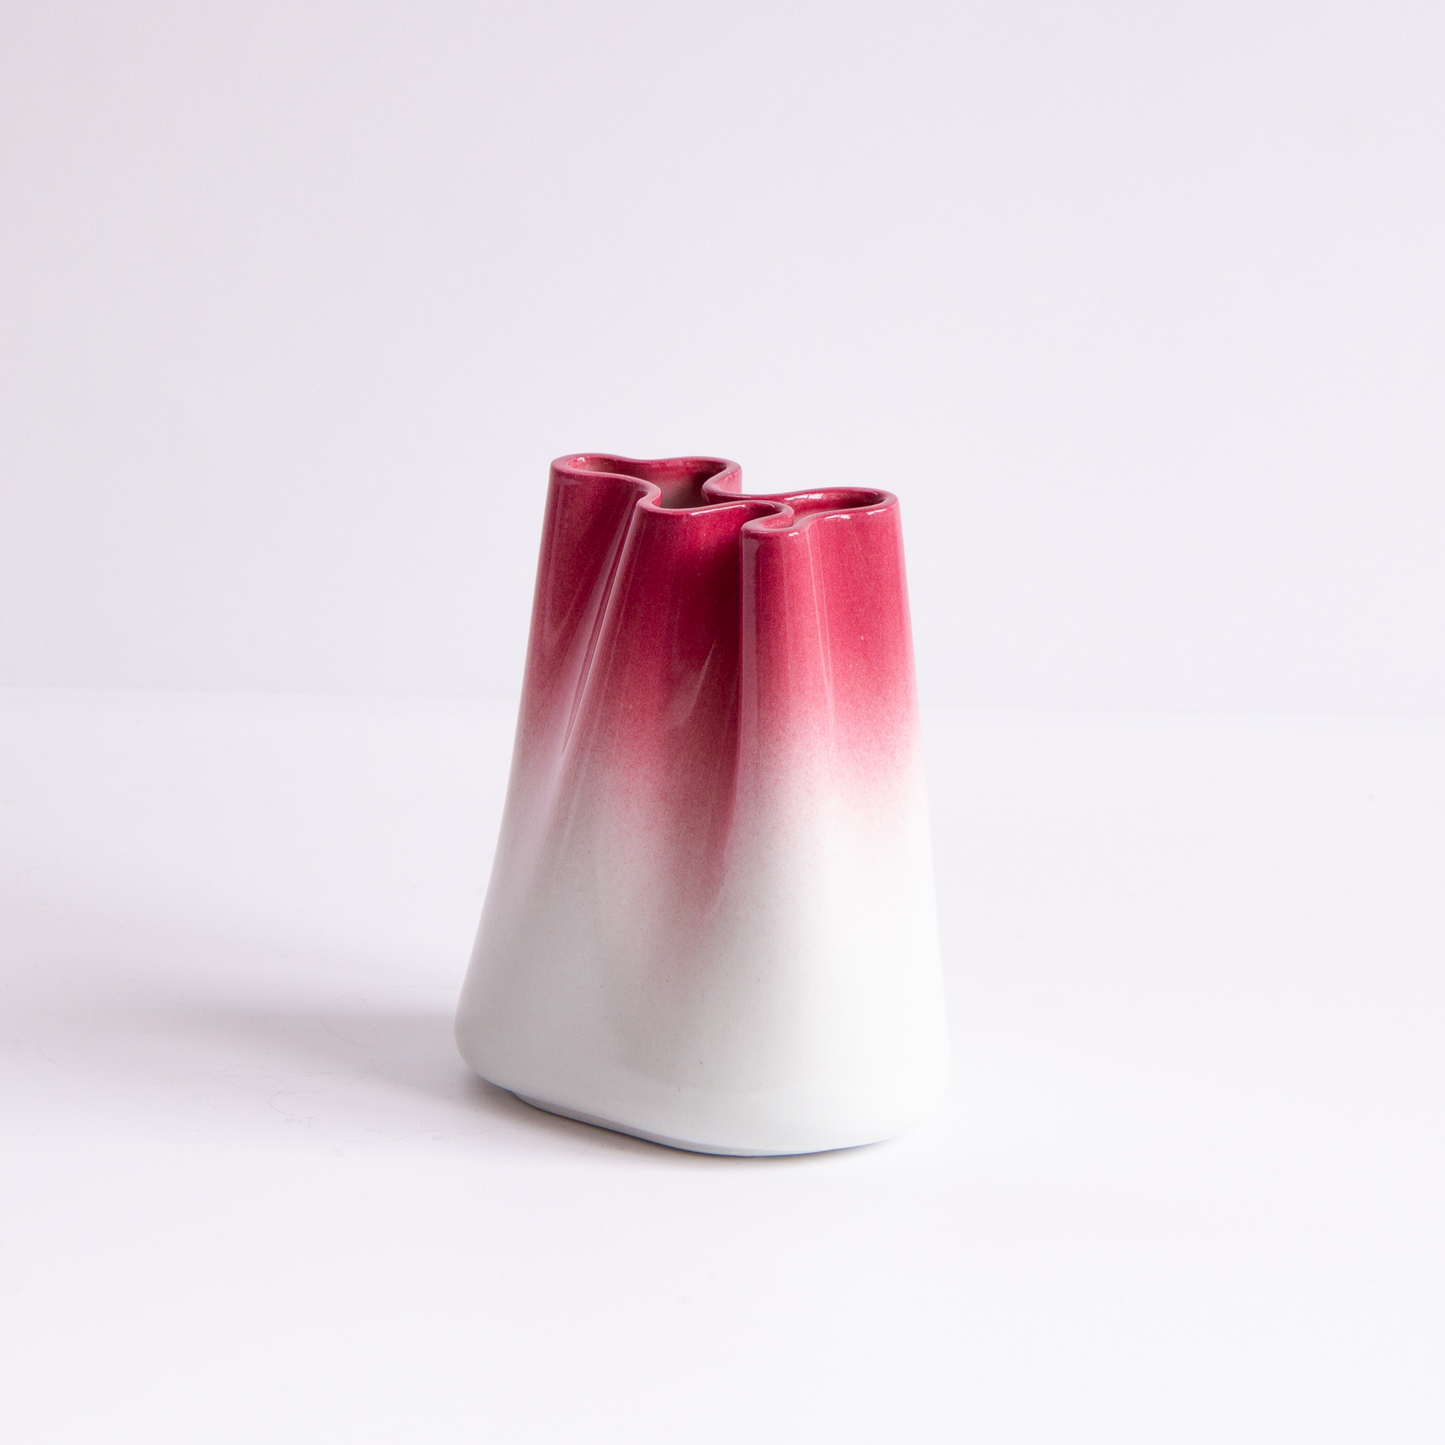 [JUMONY] High Gloss Porcelain Vase - A Set of 3 in Santorini Sunset